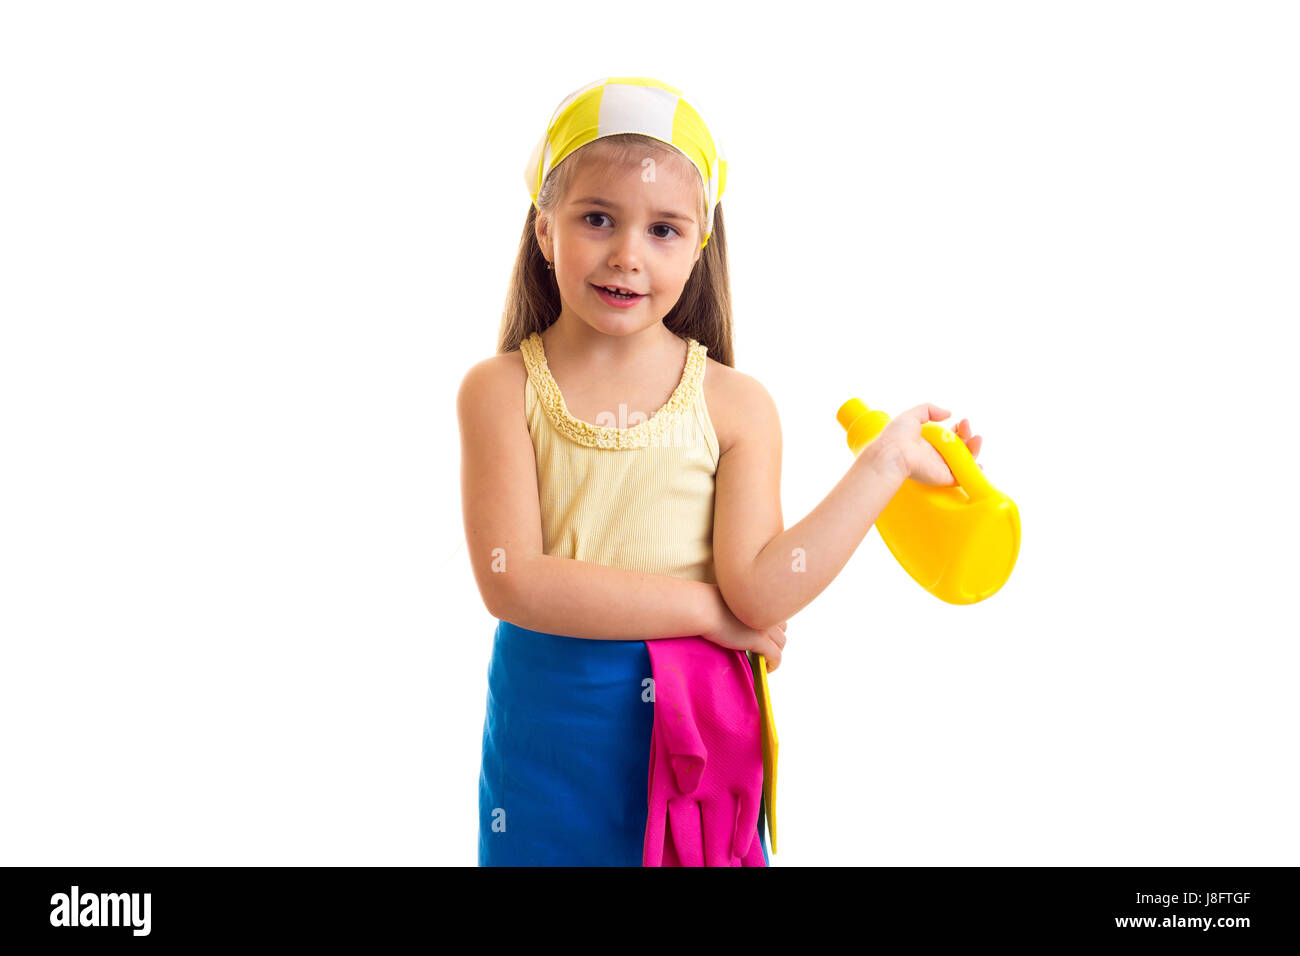 Lustige kleine Mädchen mit langen kastanienbraunes Haar in gelbes Hemd und blaue Schürze mit rosa Handschuhe und gelbes Halstuch gelb Duster und gelbe Flasche halten Stockfoto